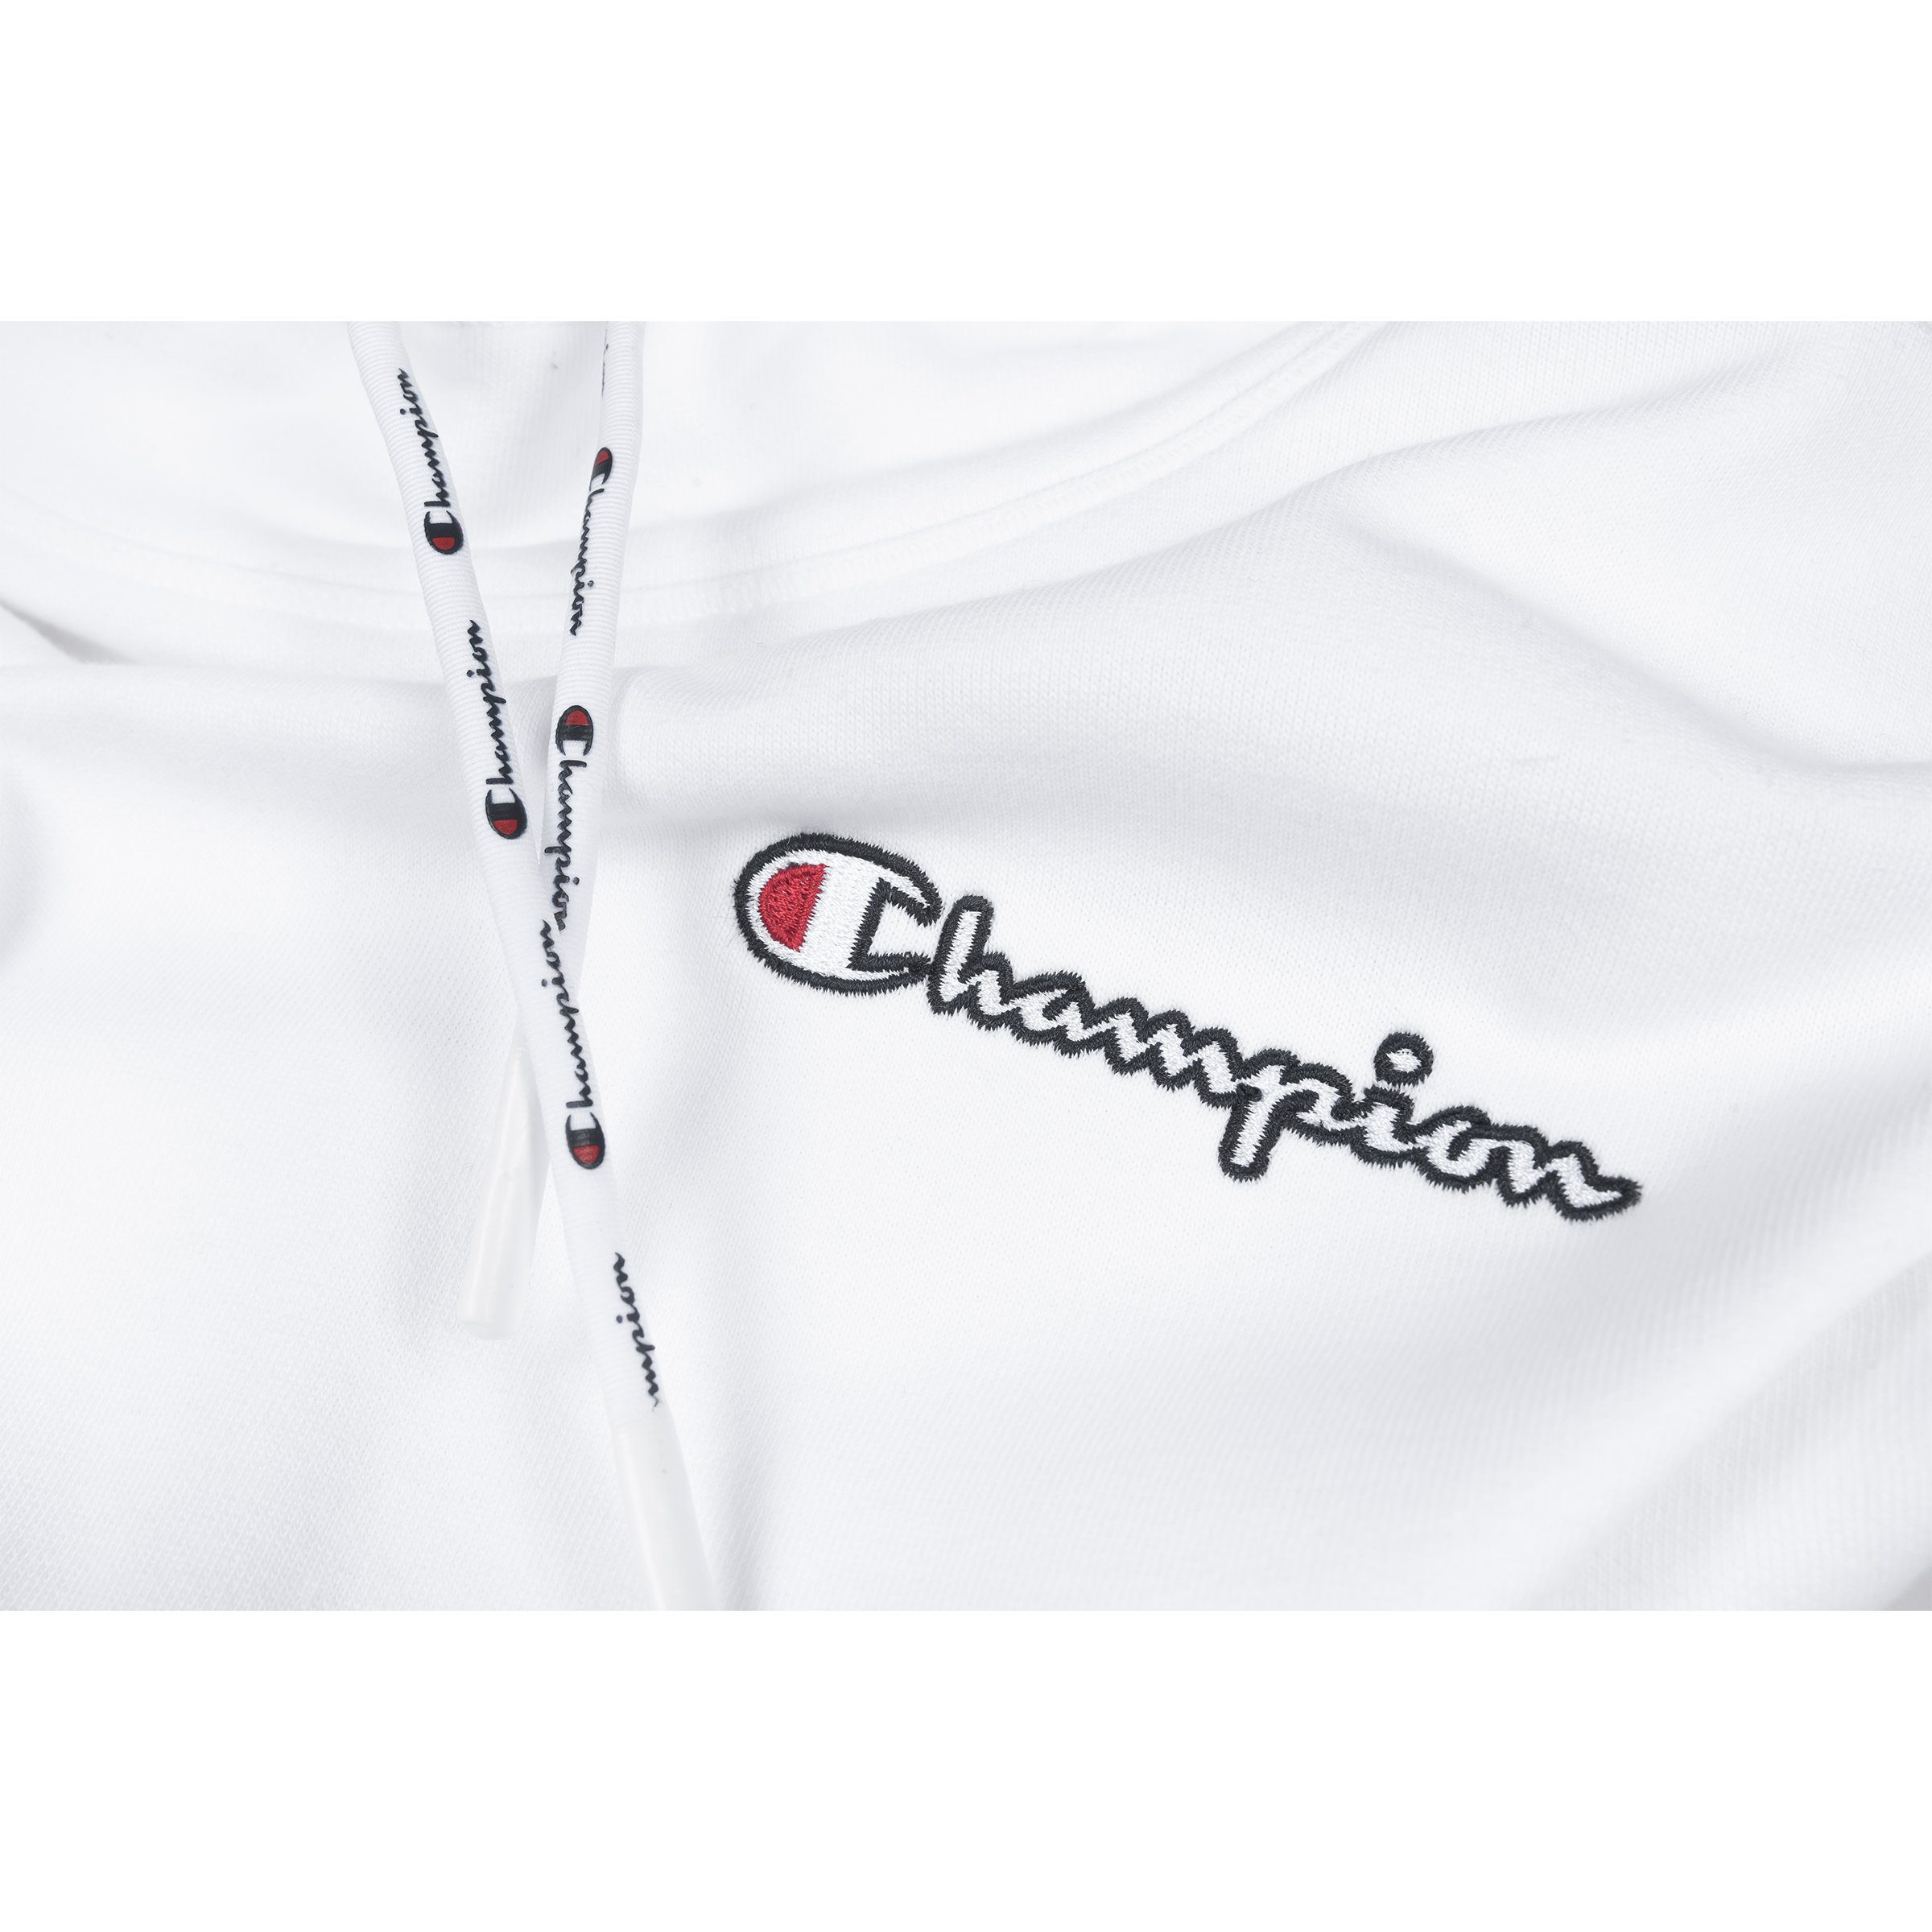 Champion Hoodie Damen Kapuzenpullover (wht) 113186 weiß Champion Hooded Sweatshirt